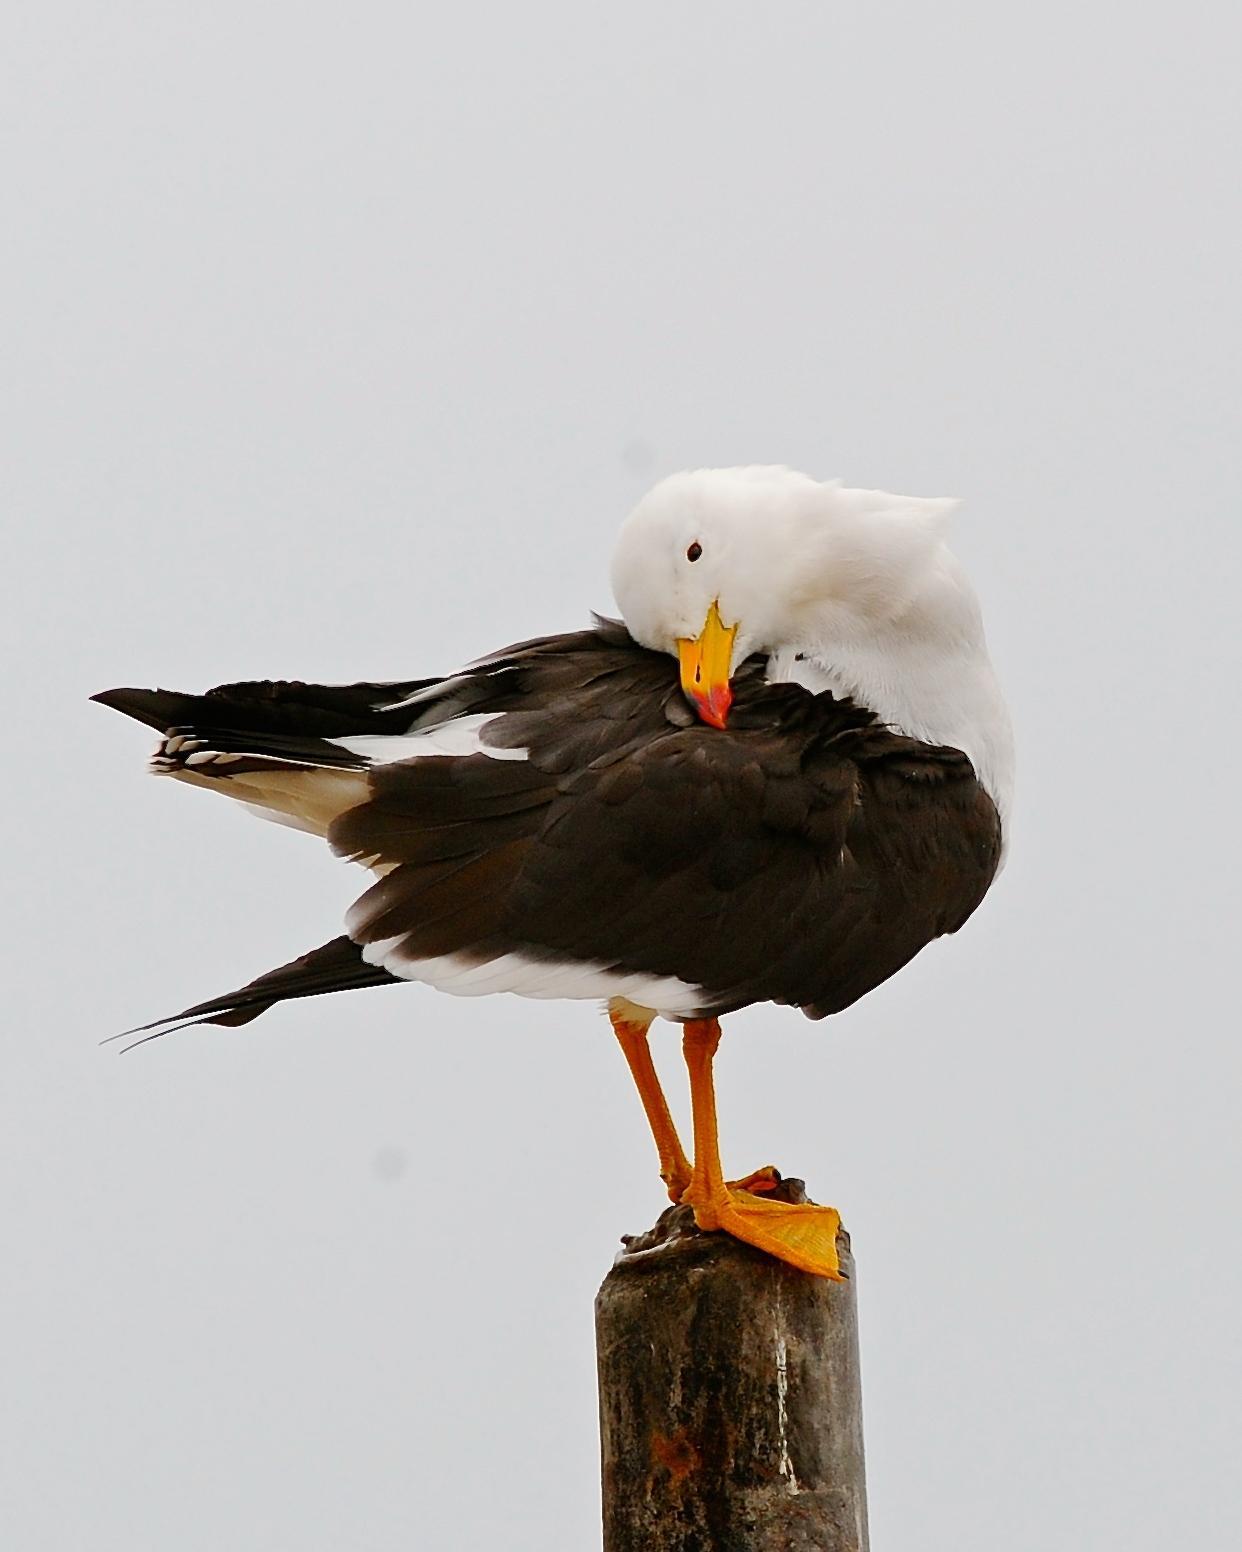 Belcher's Gull Photo by Gerald Friesen